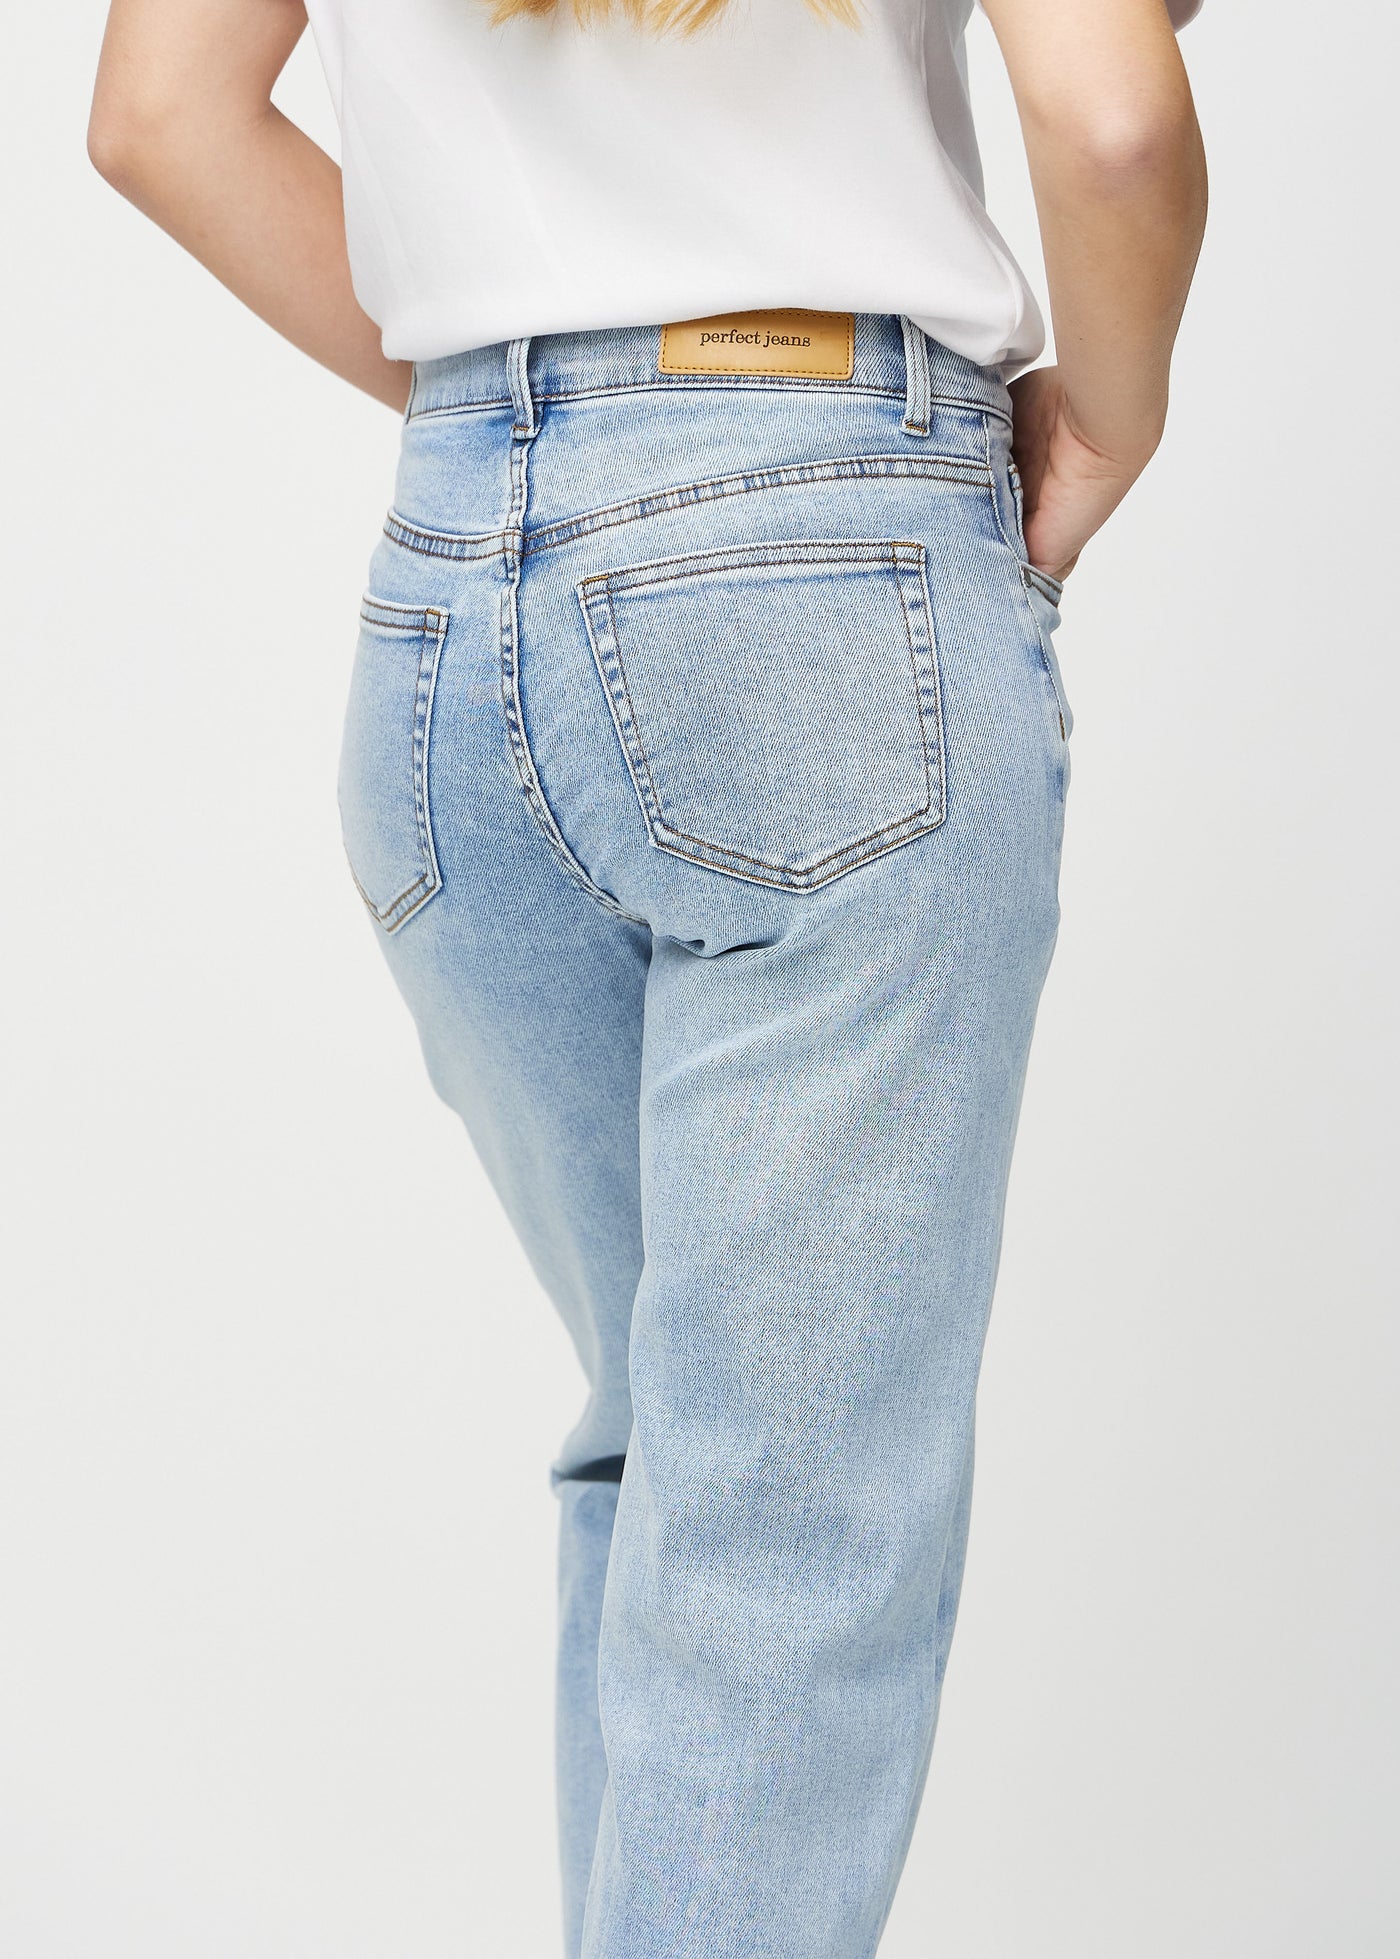 Lys denim loose jeans set bagfra tæt på for at vise detaljer.